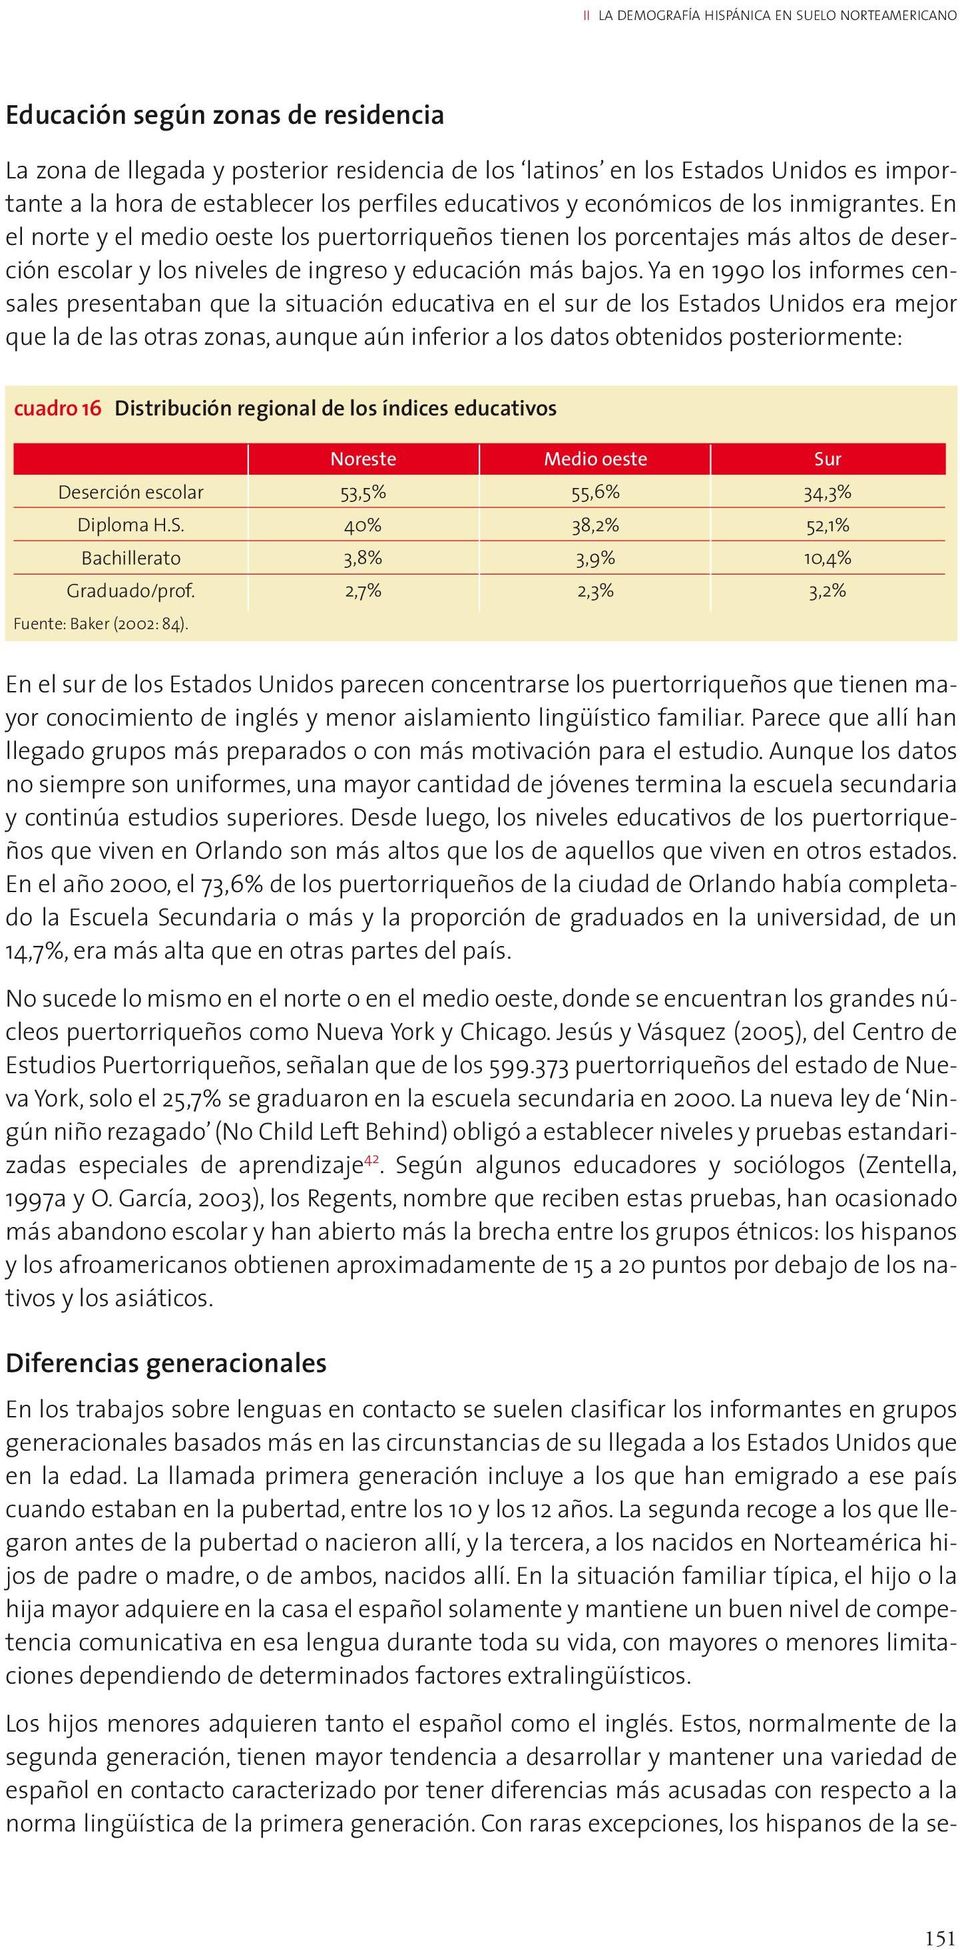 En el norte y el medio oeste los puertorriqueños tienen los porcentajes más altos de deserción escolar y los niveles de ingreso y educación más bajos.